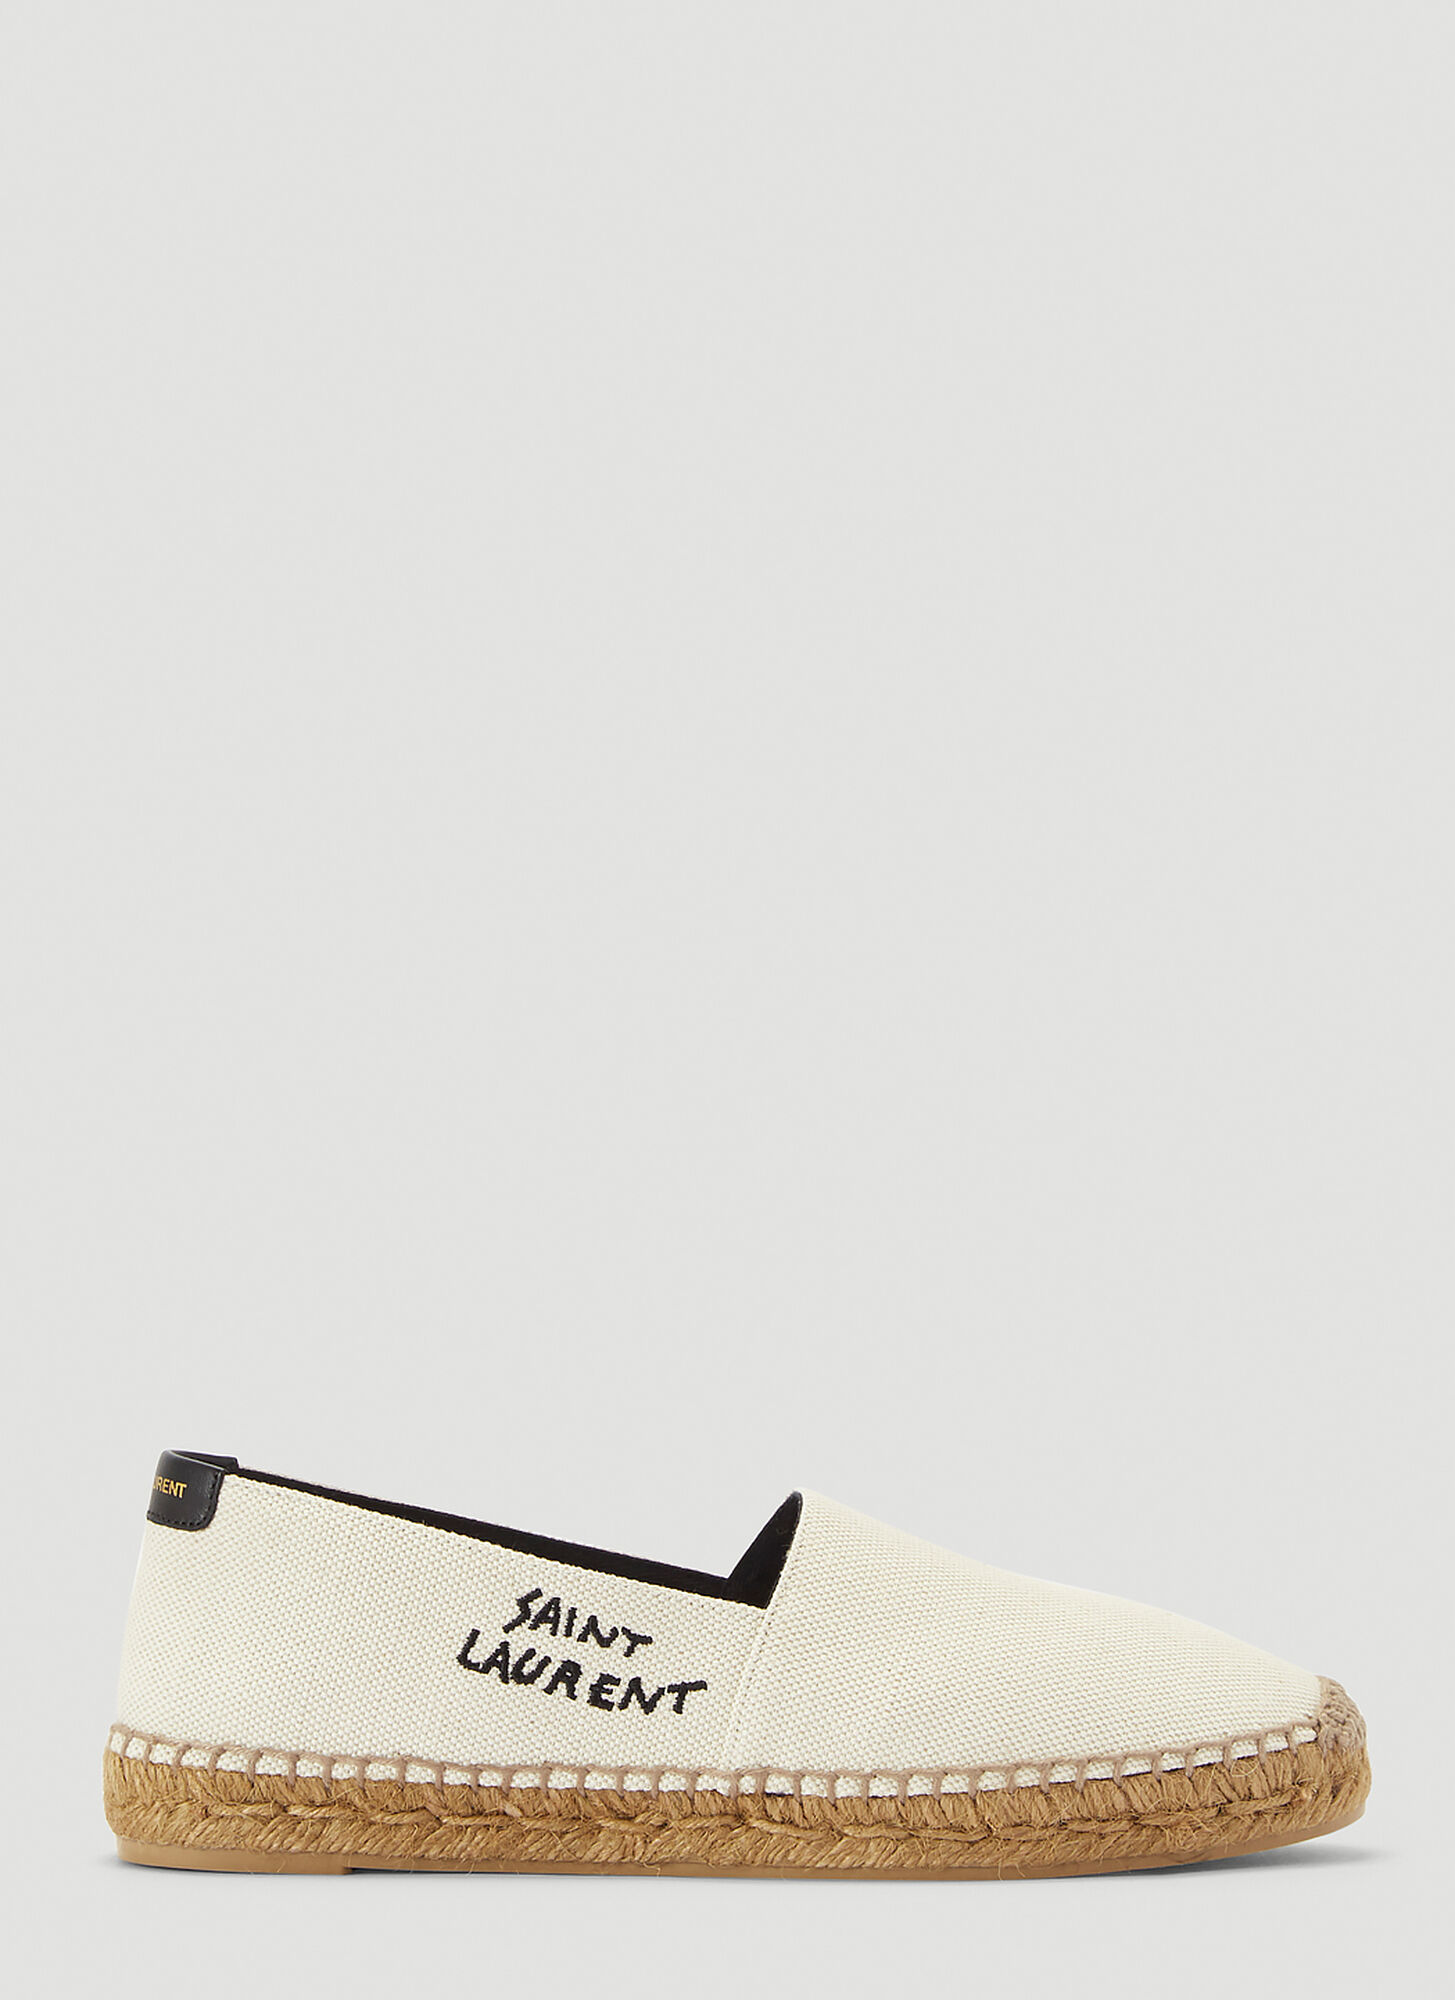 Shop Saint Laurent Logo Espadrilles Shoes